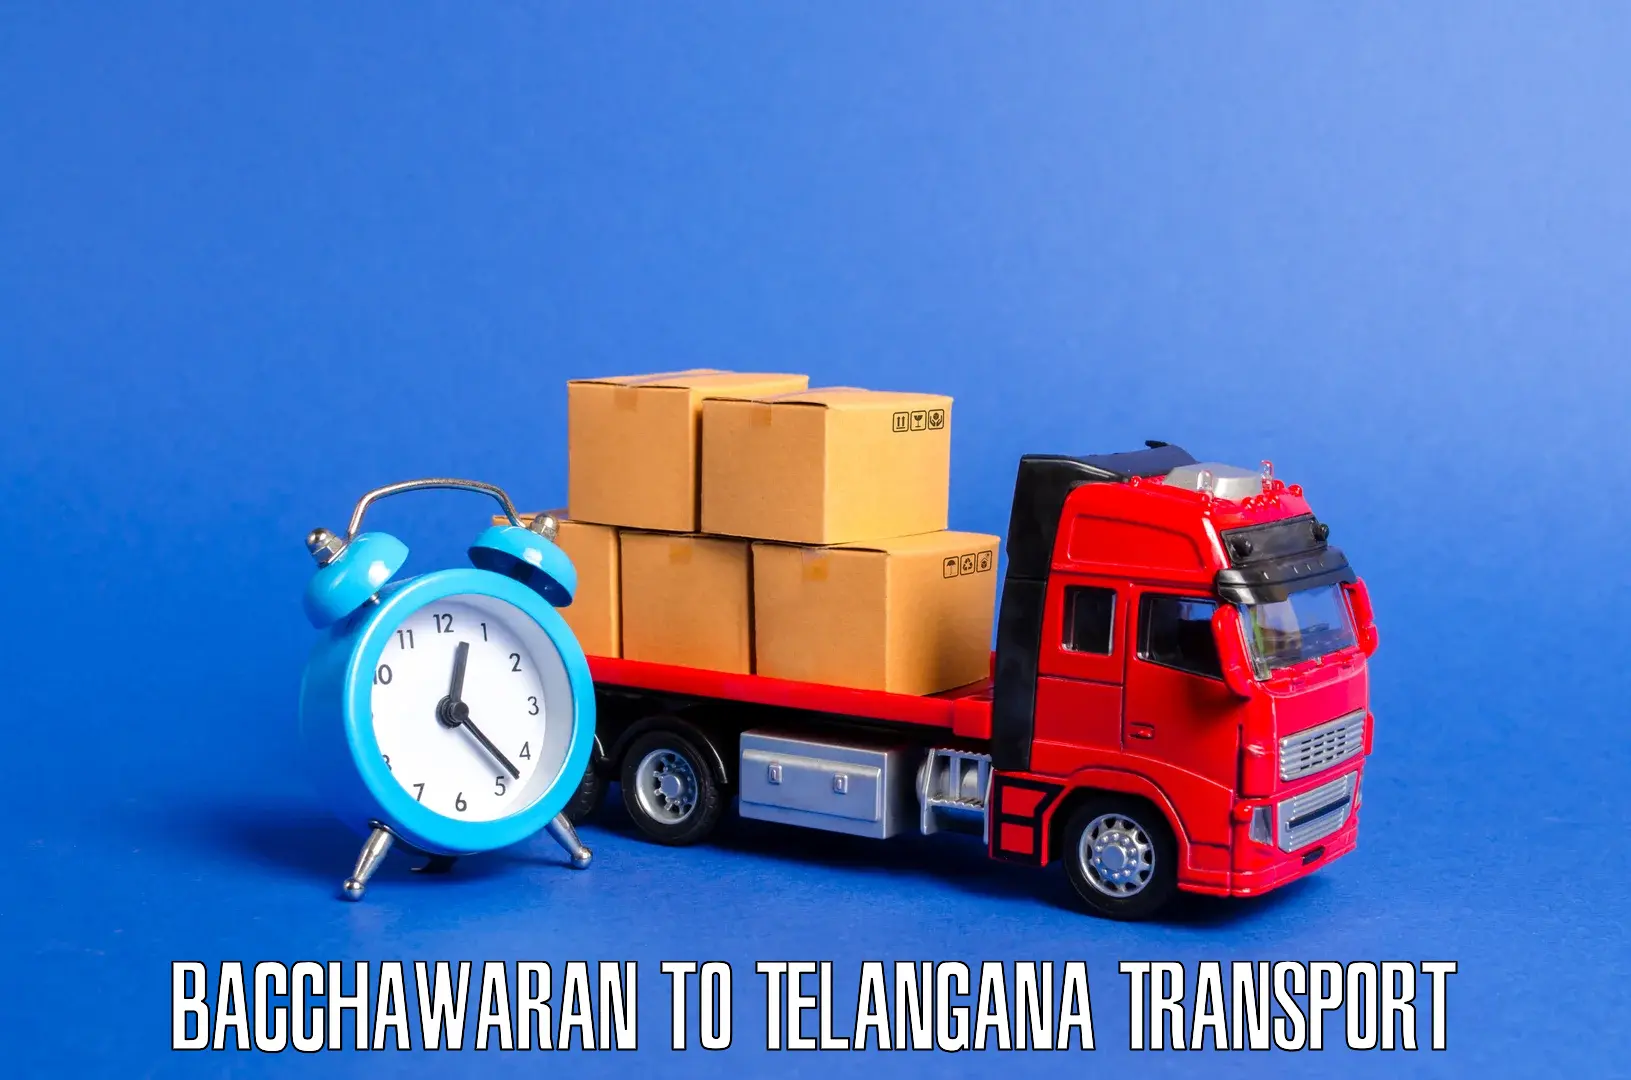 Furniture transport service Bacchawaran to Kakeshwaram